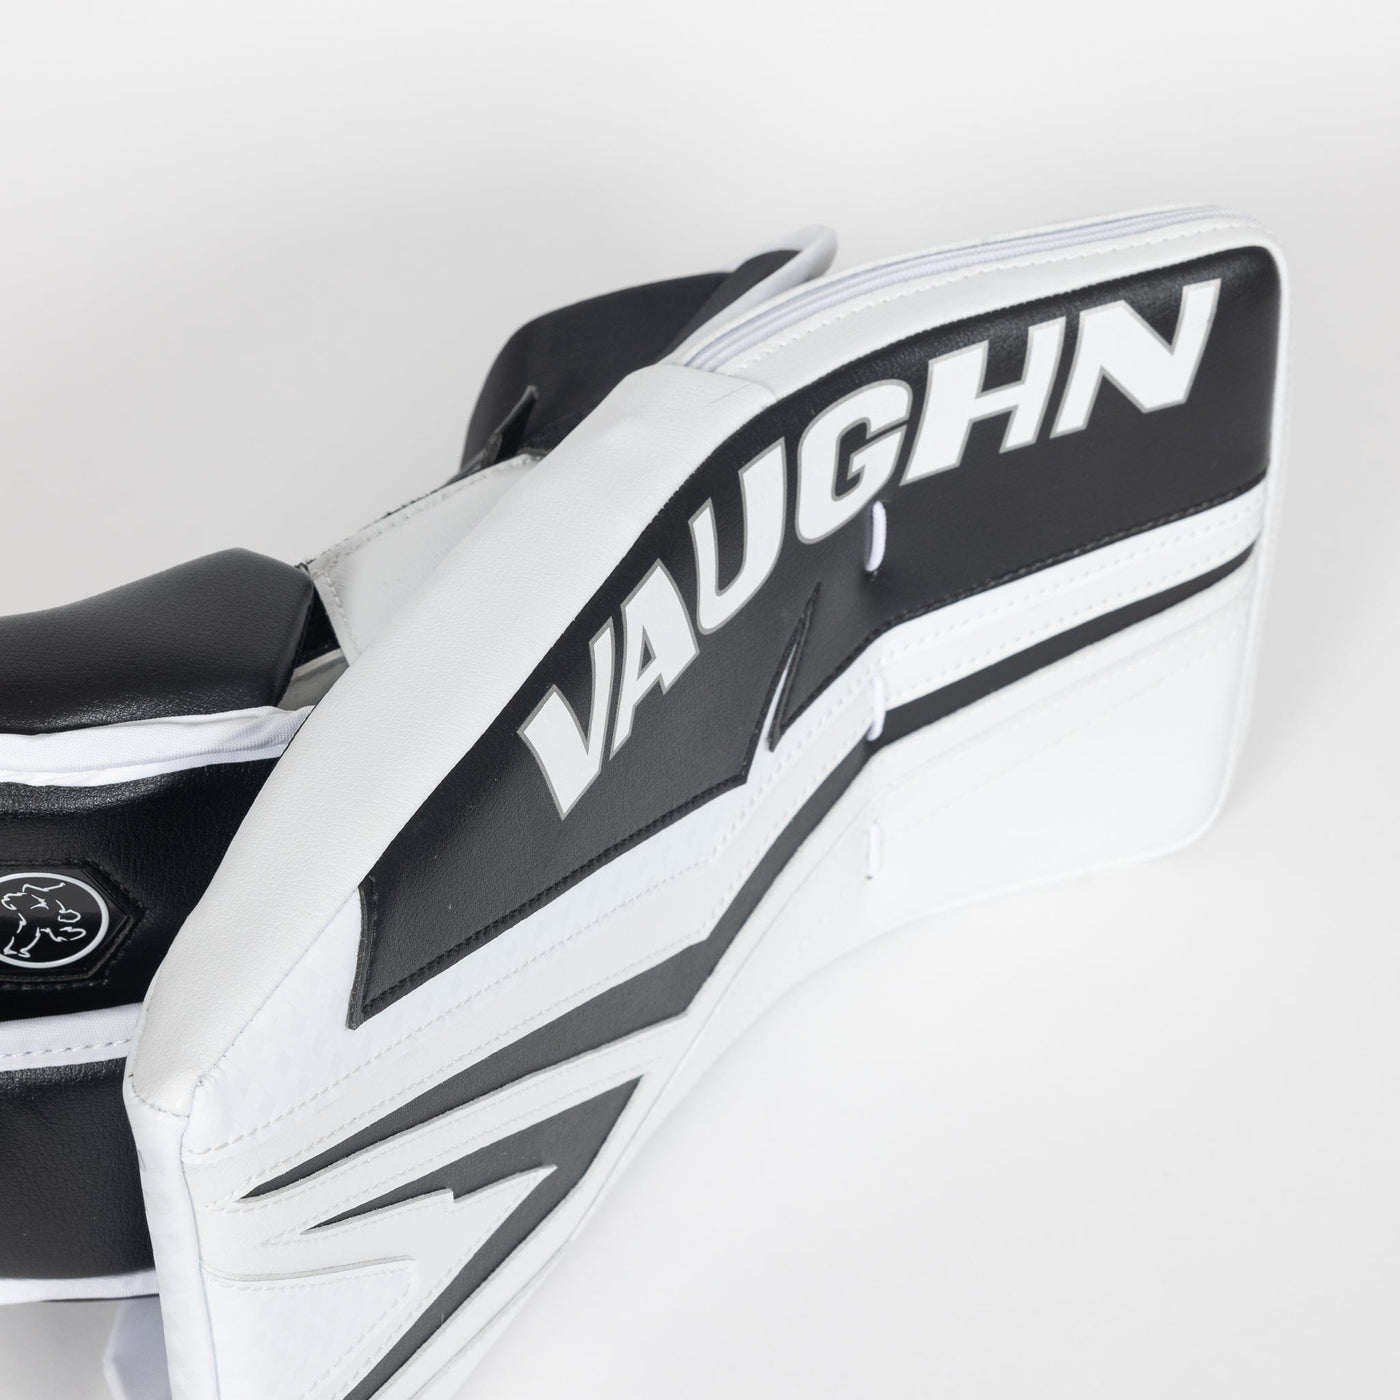 Vaughn Ventus SLR4 Pro Senior Goalie Blocker - TheHockeyShop.com